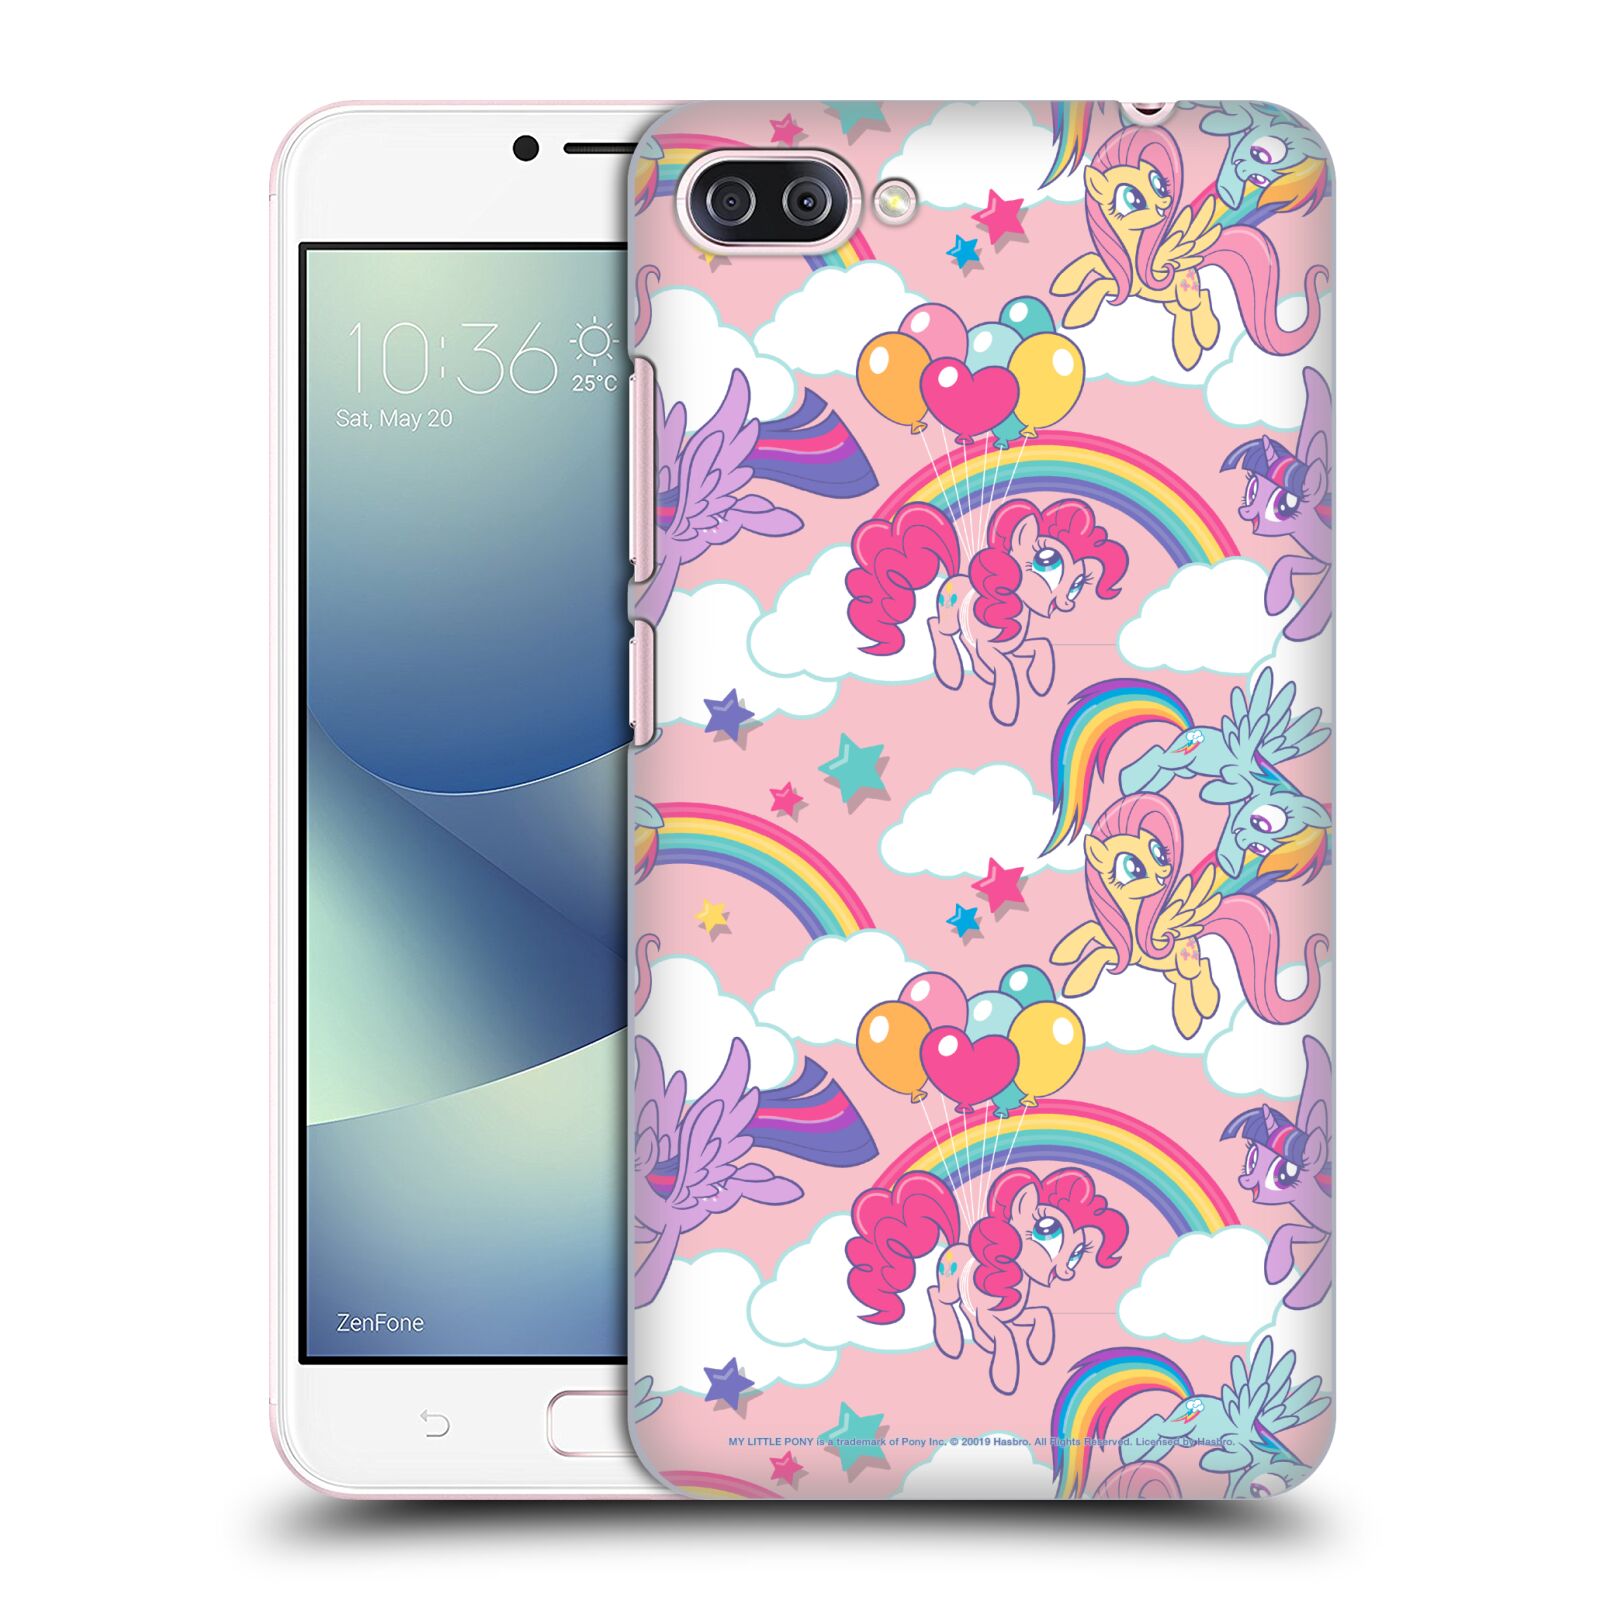 Zadní obal pro mobil Asus Zenfone 4 MAX / 4 MAX PRO (ZC554KL) - HEAD CASE - My Little Pony - růžová